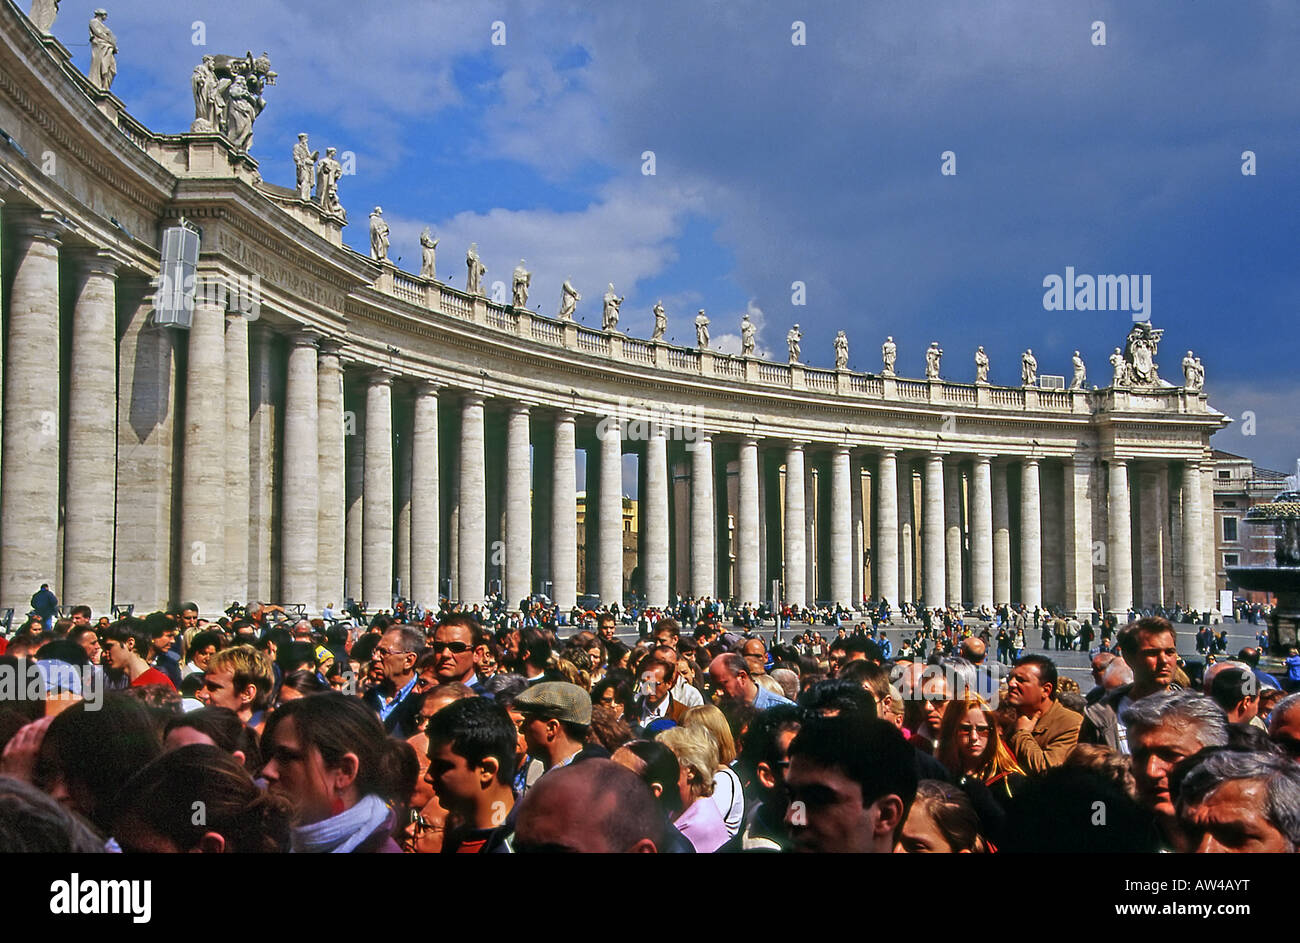 La foule à la place San Pietro Vatican Rome Italie Banque D'Images